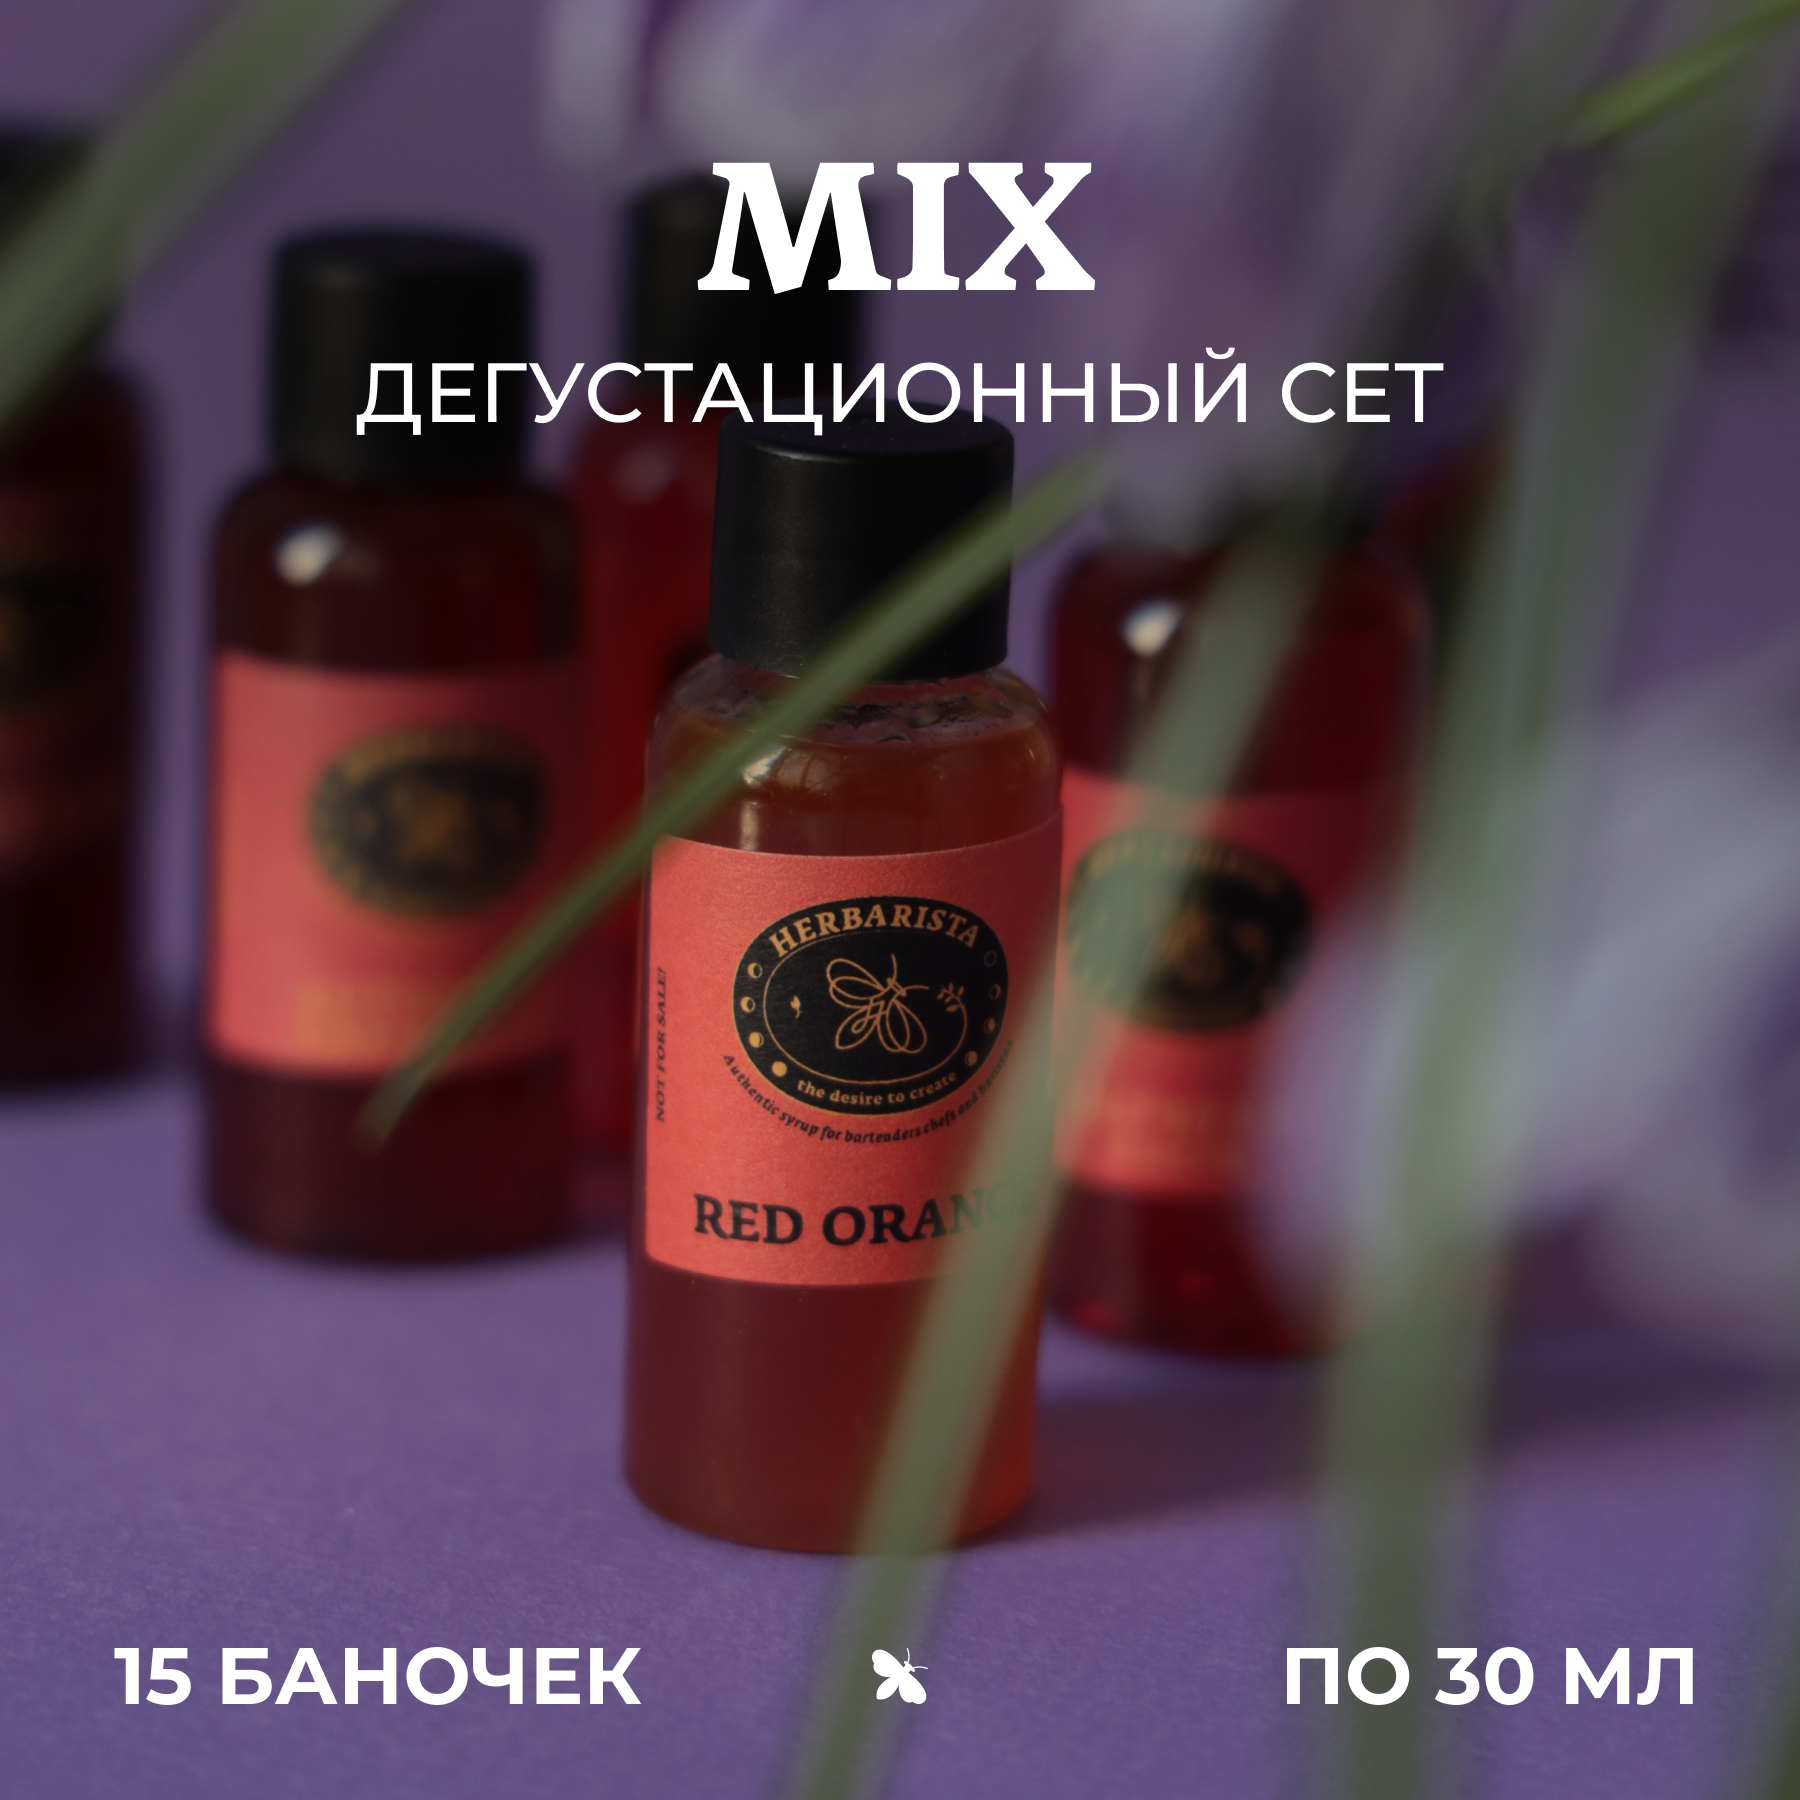 Набор сиропов Herbarista, Дегустационный сет "Mix / Микс" (15 шт. / 30 мл)